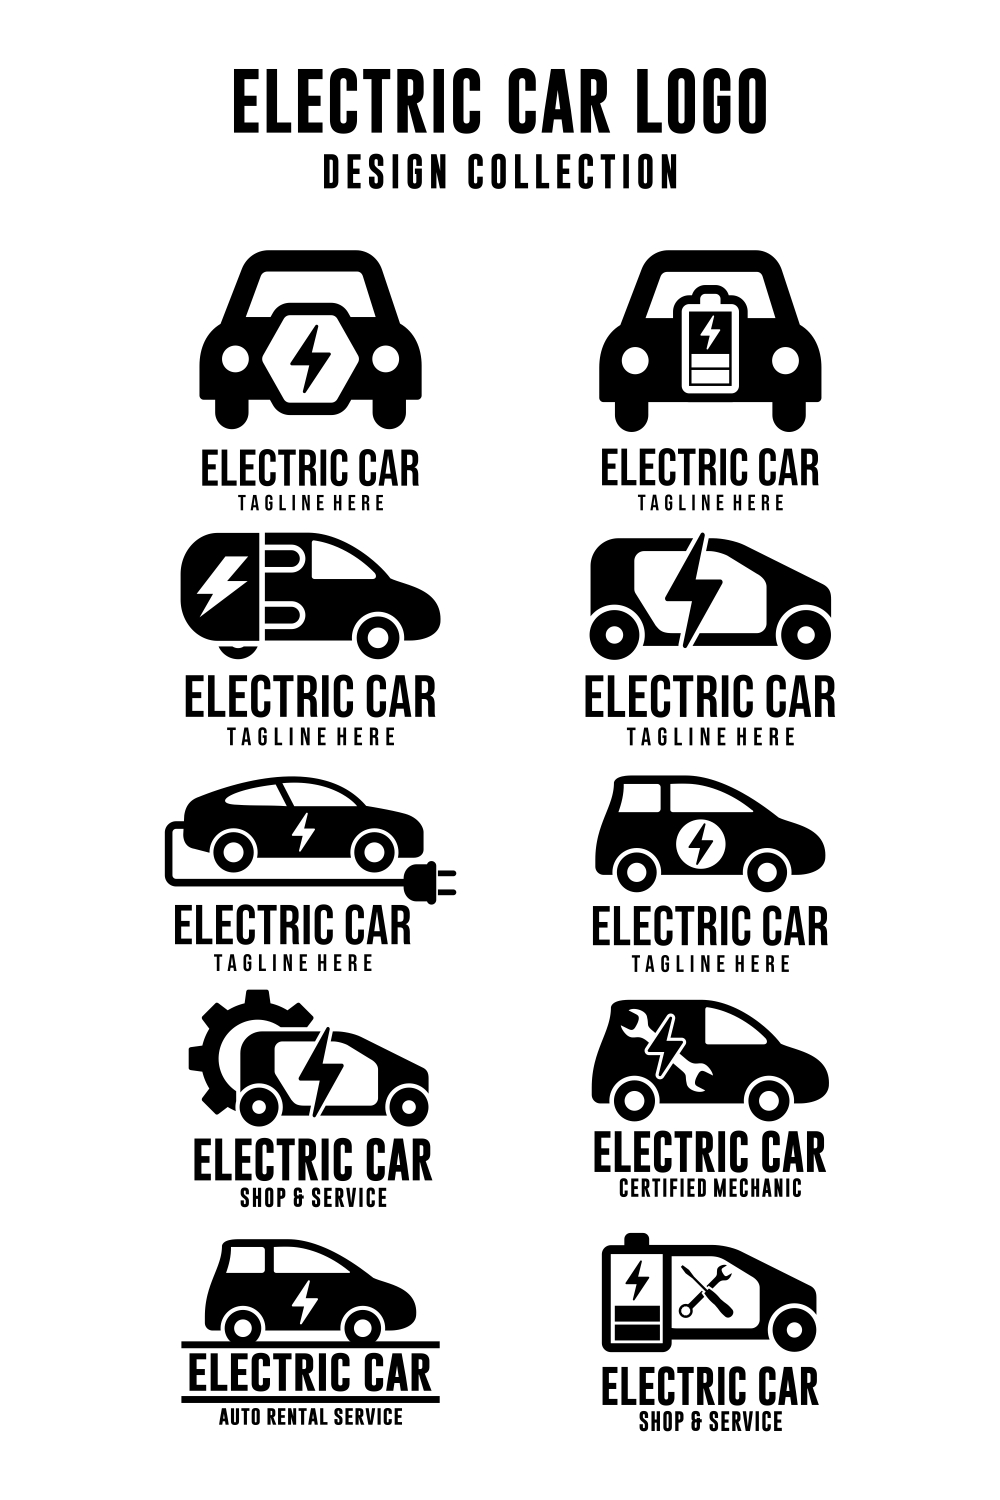 Pin on Car logo design